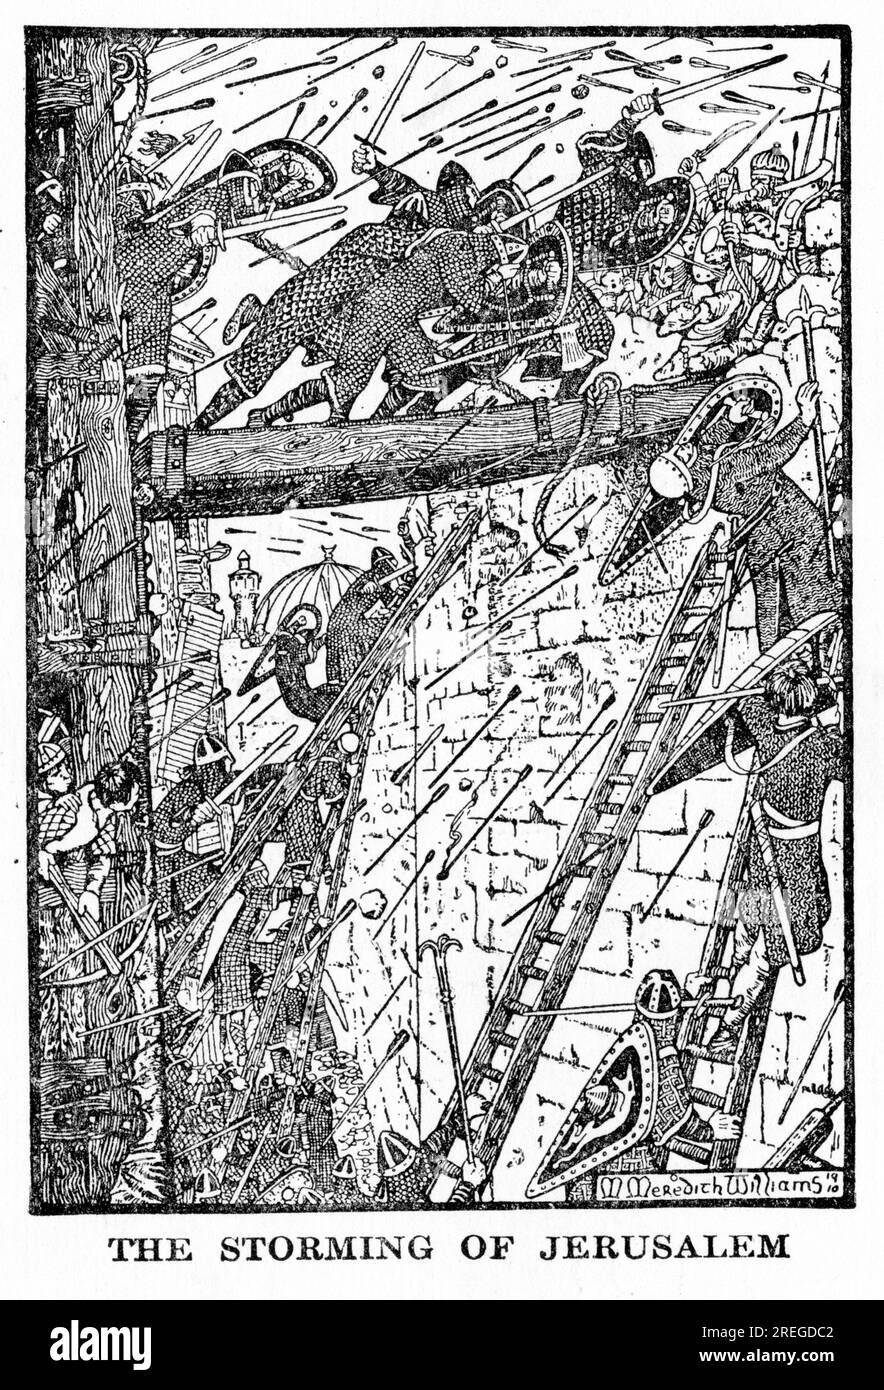 La prise de Jérusalem pendant les croisades, publié vers 1910 Banque D'Images